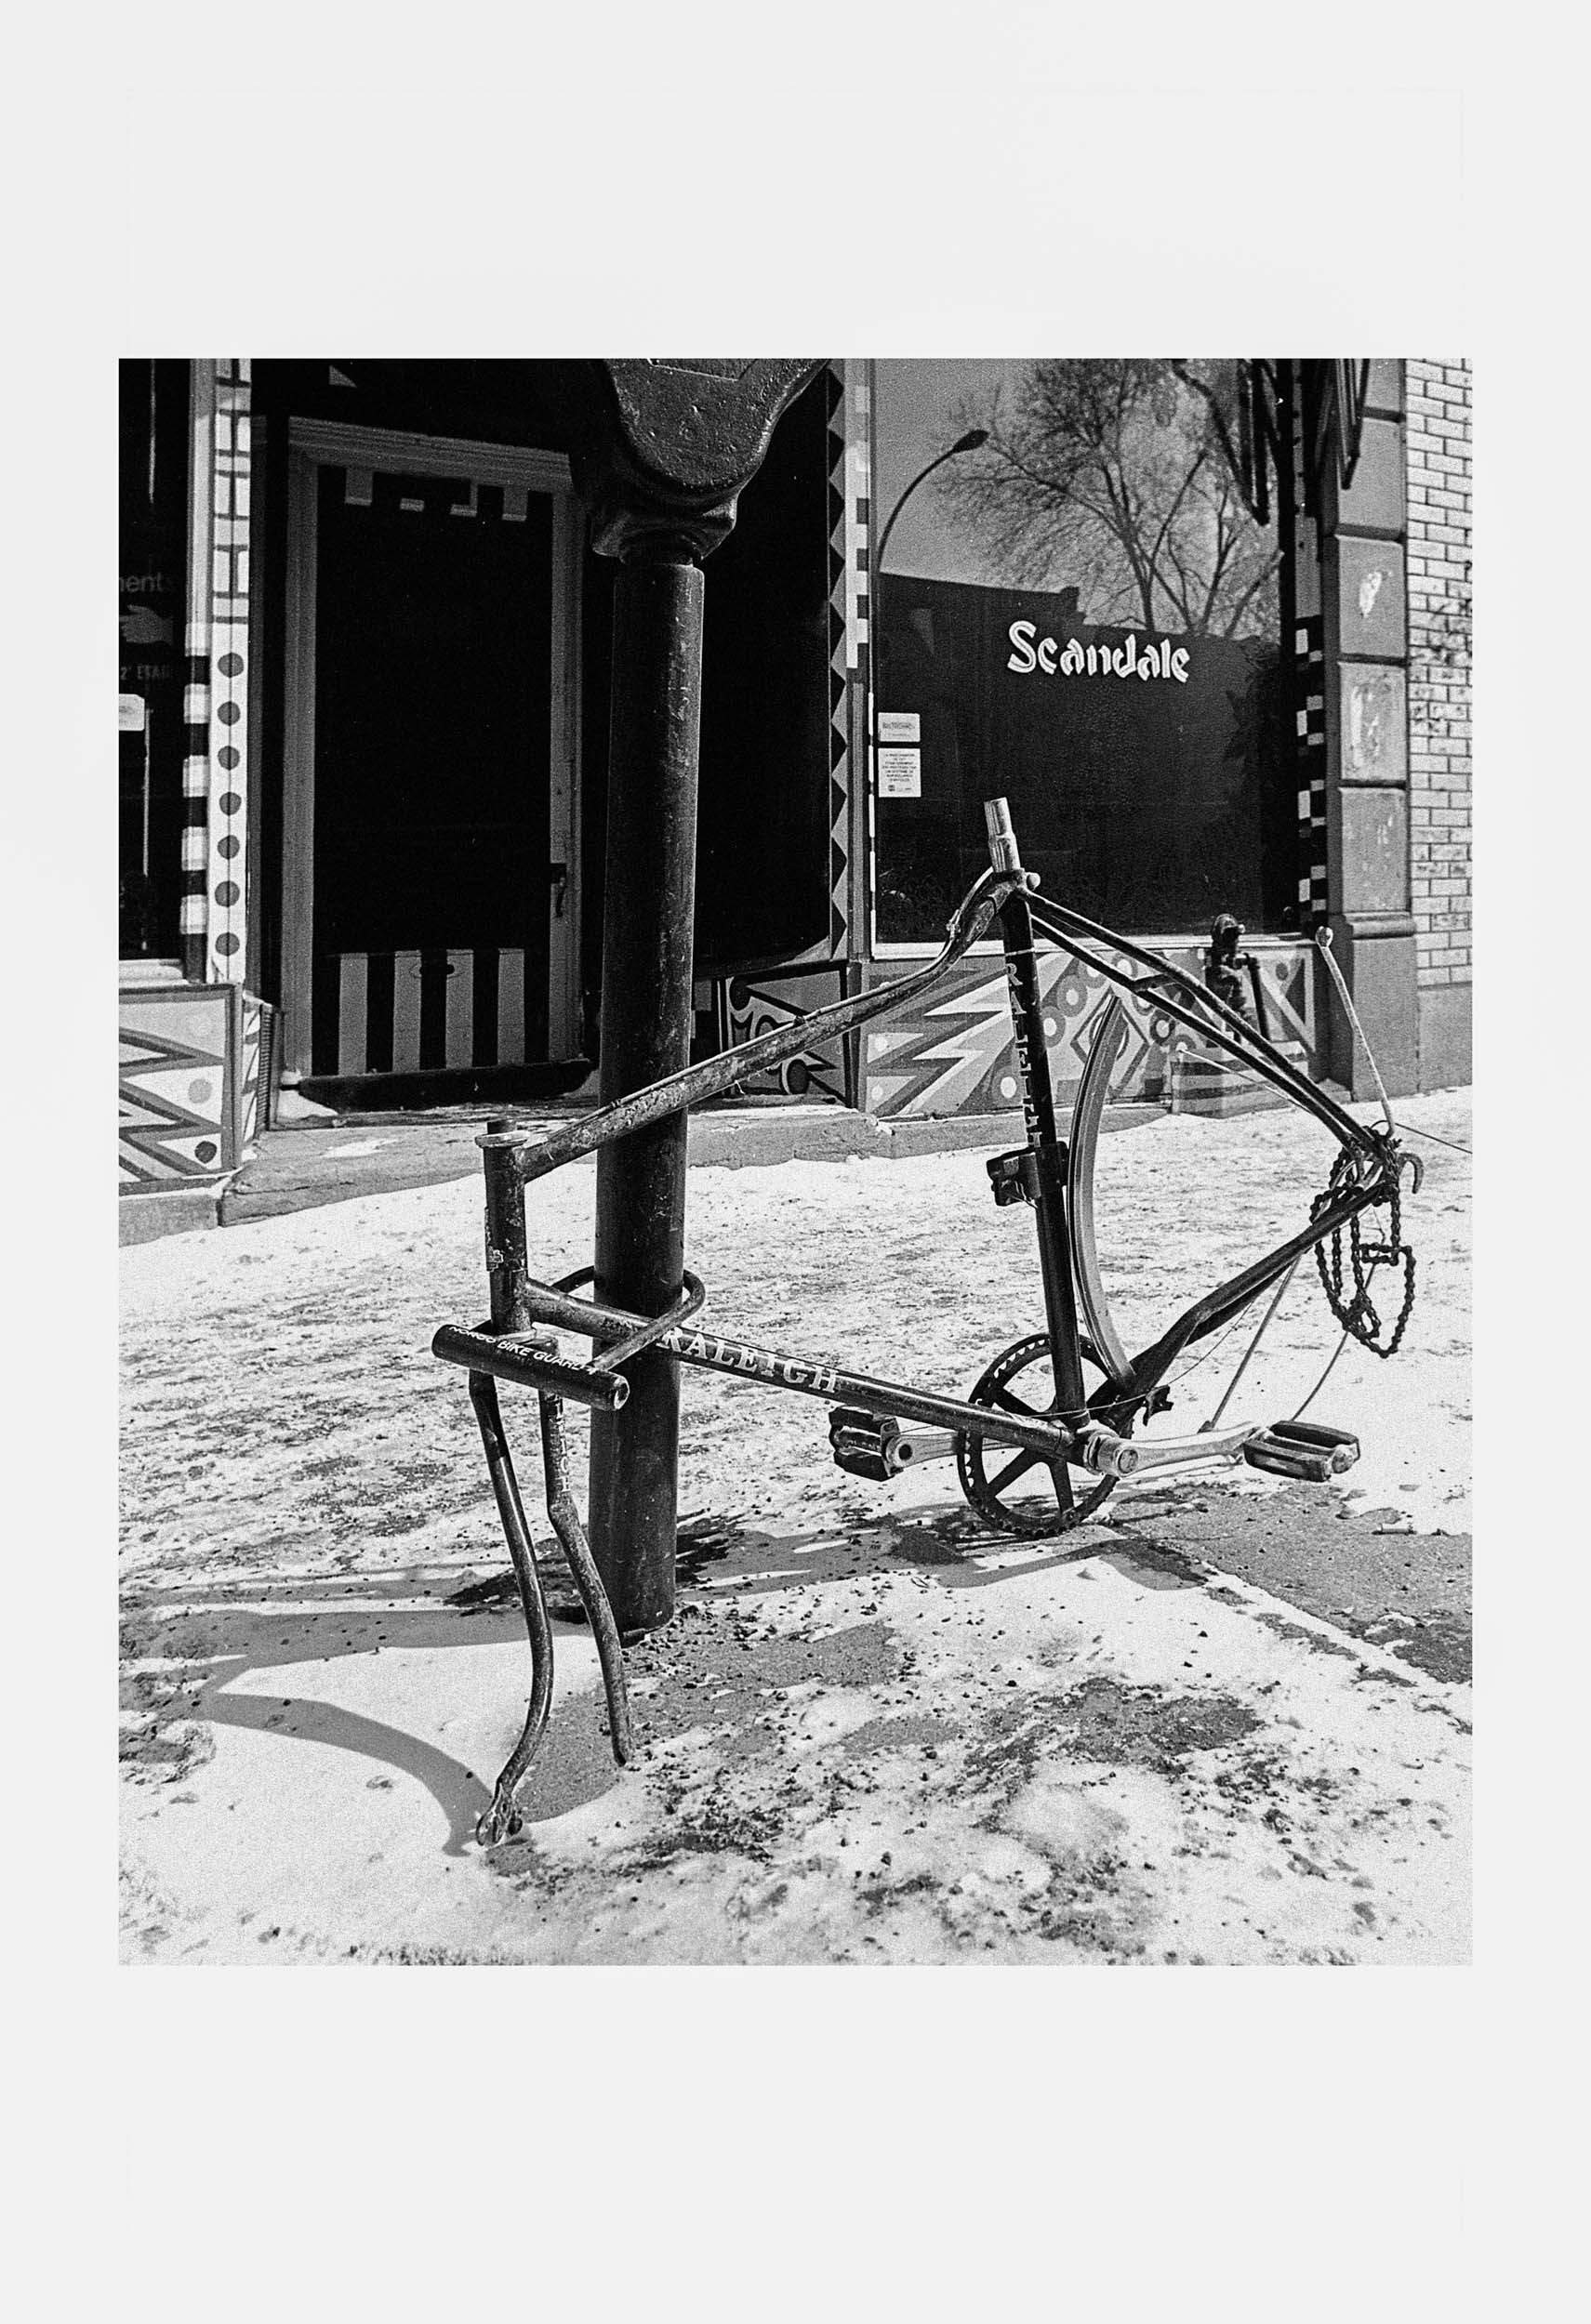  Série de photos sur les vélos abandonnés dans les rues de Montréal 